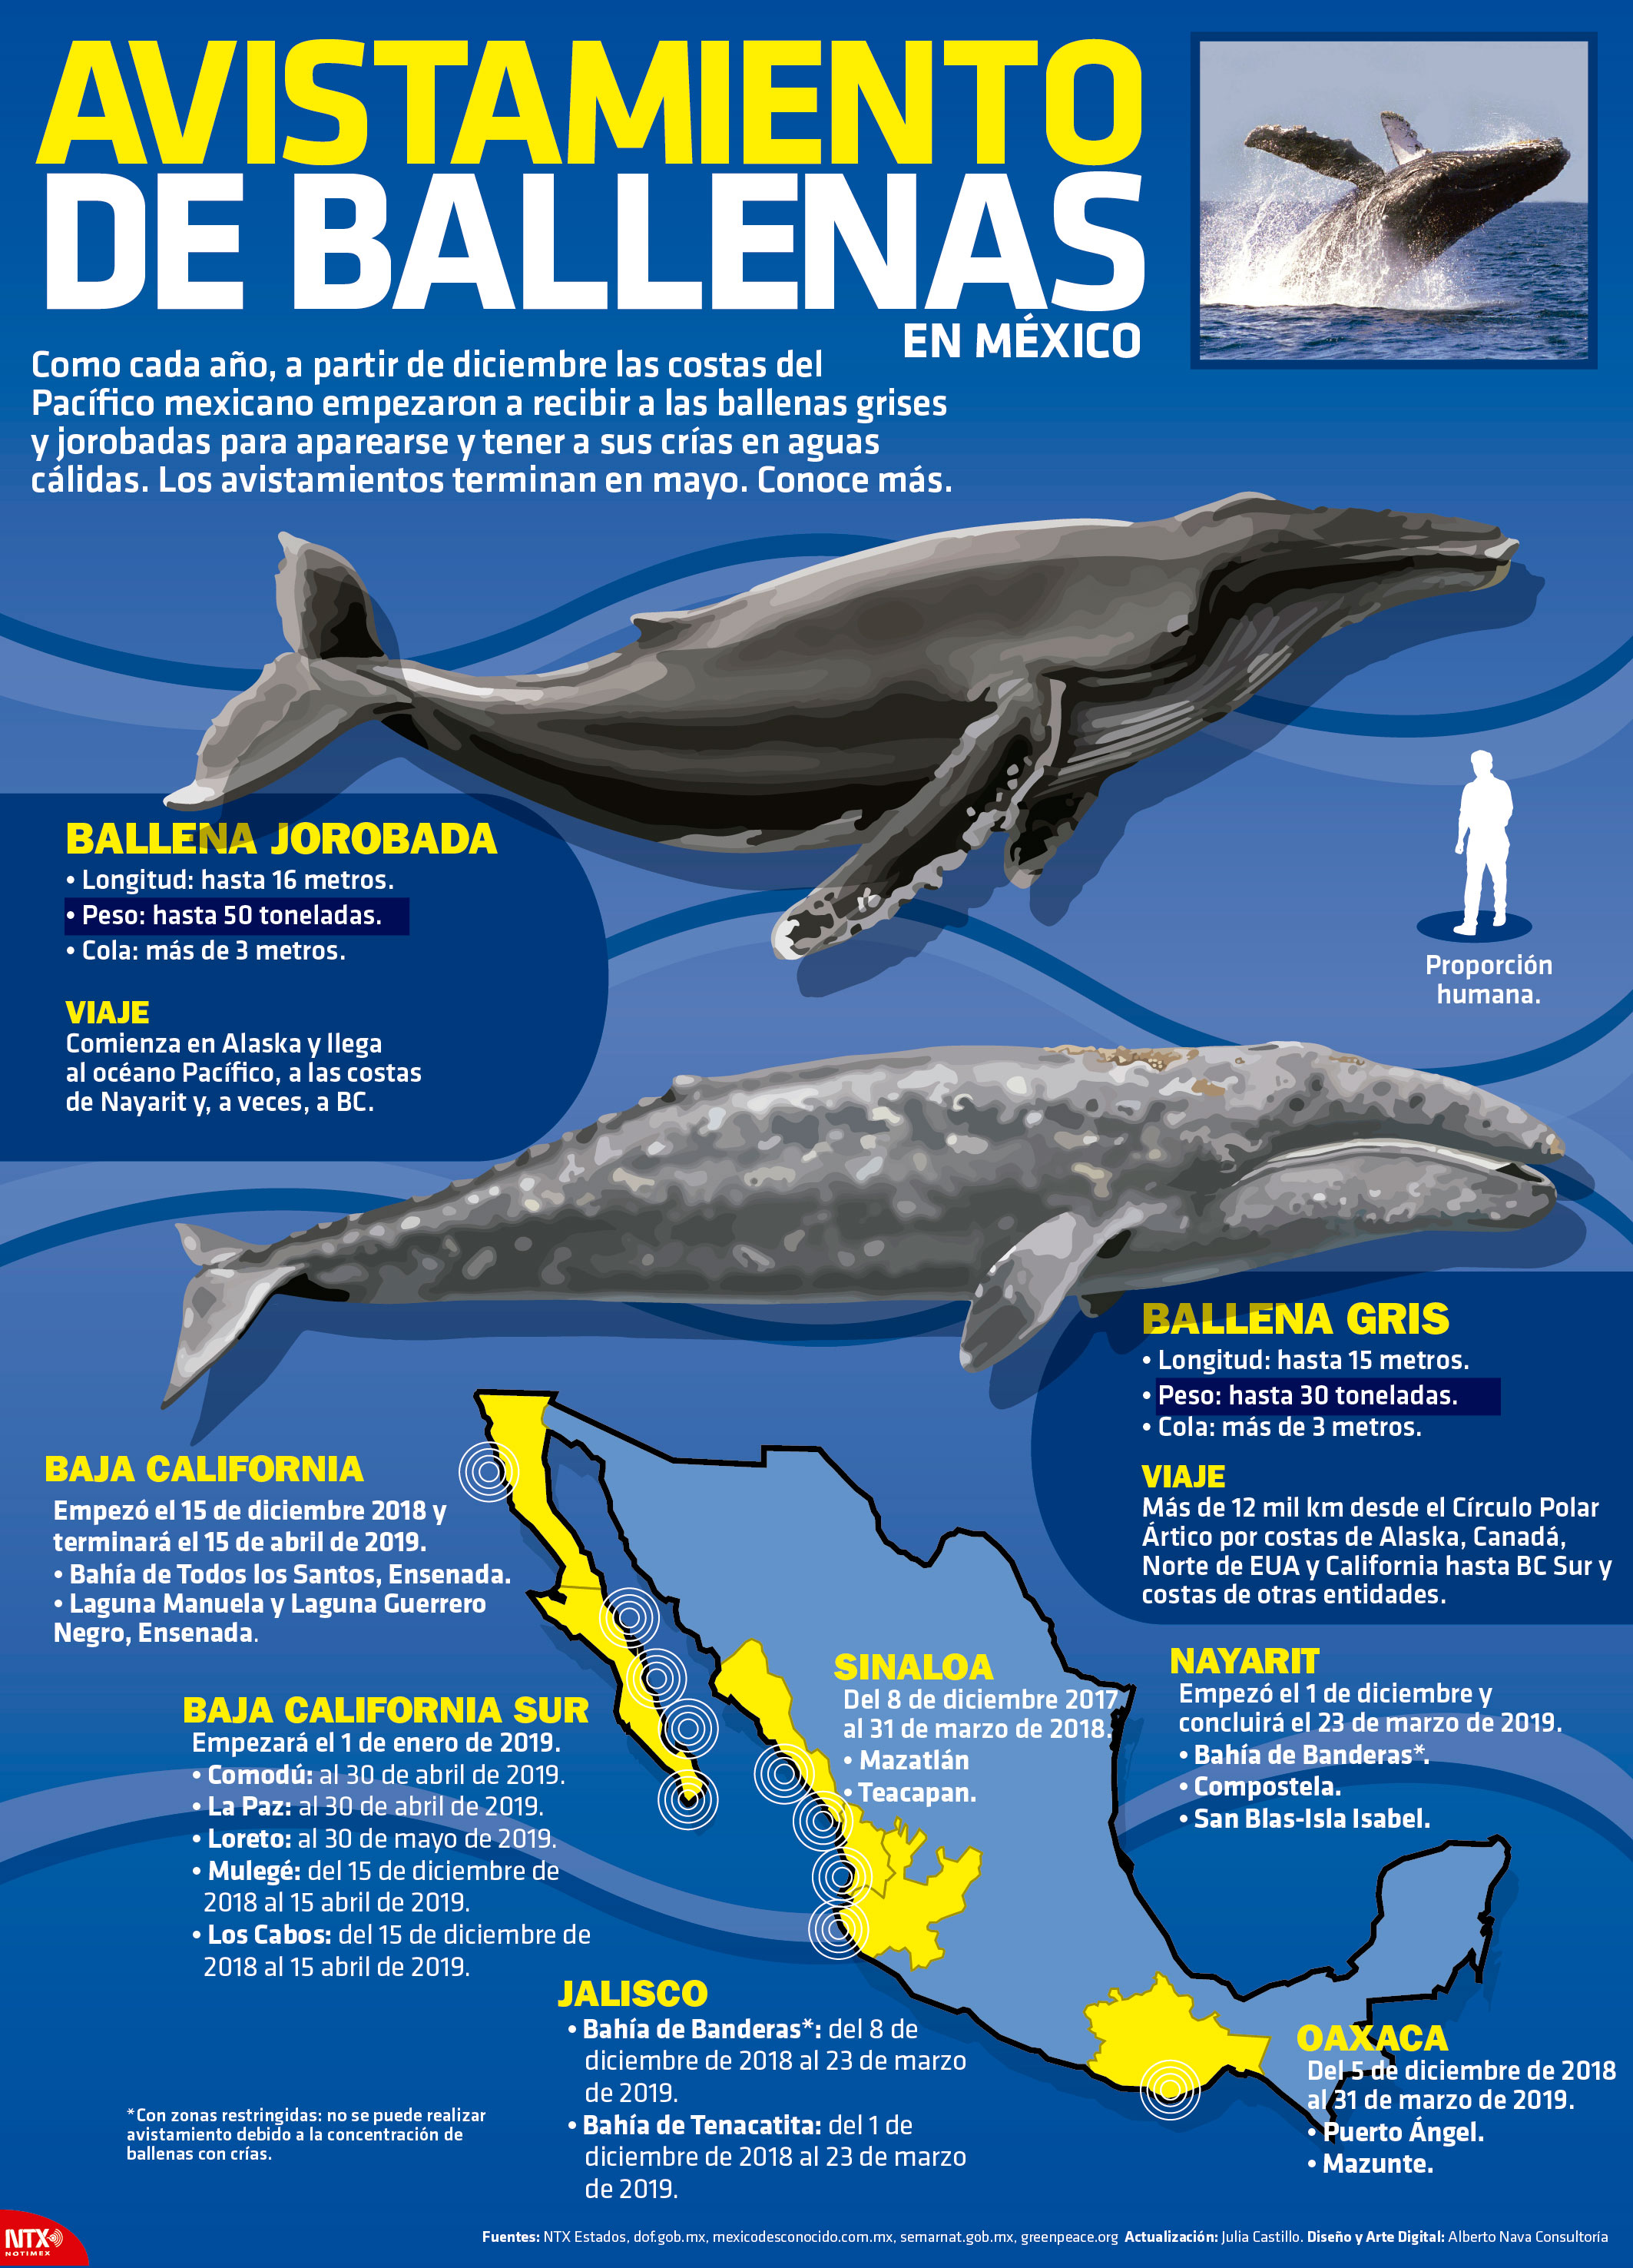 Avistamiento de Ballenas en Mxico